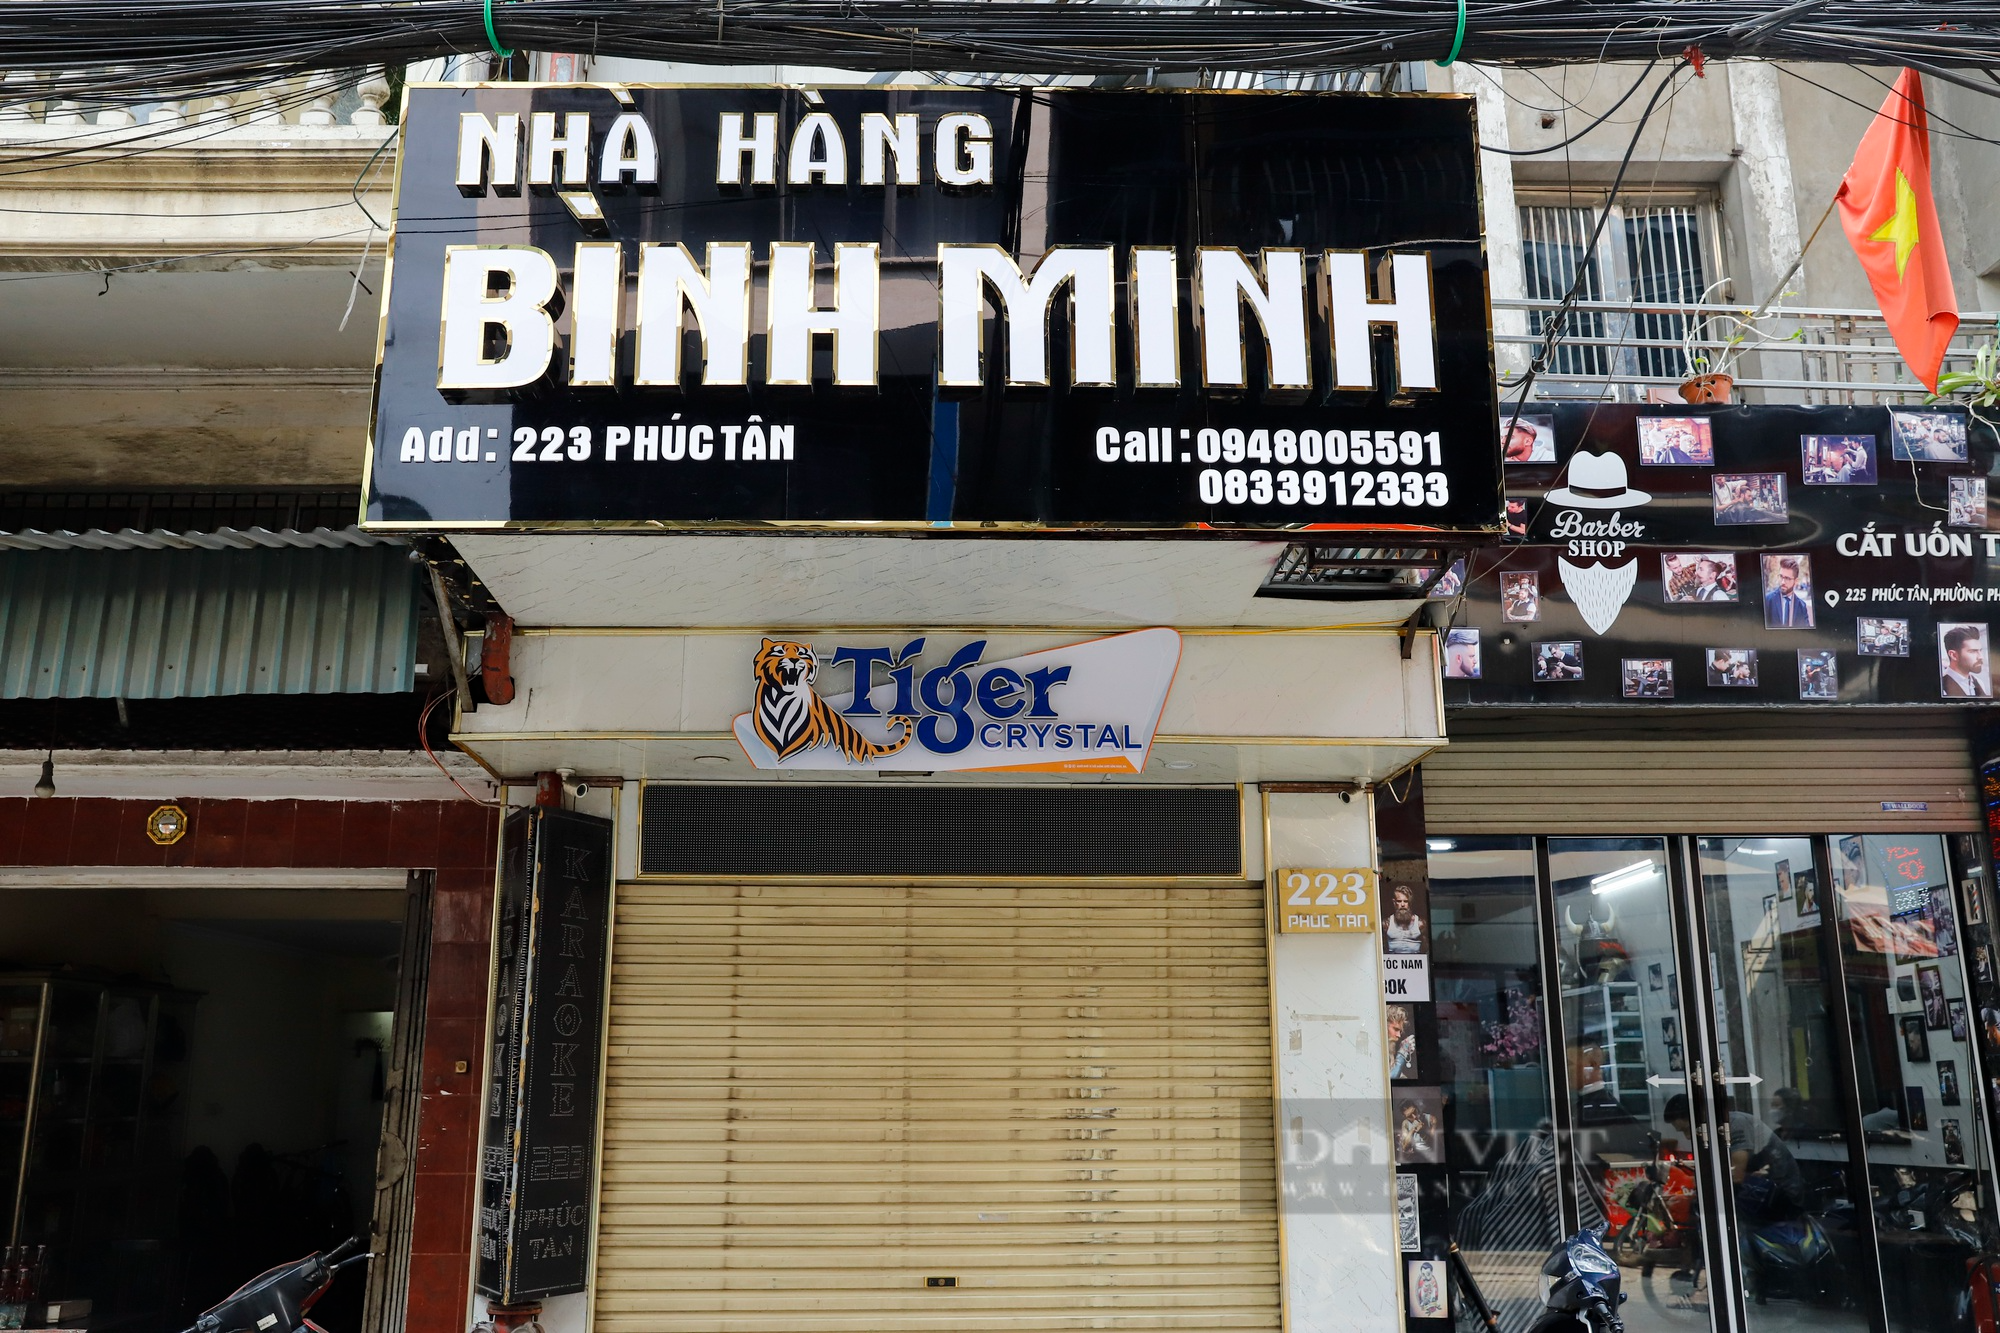 Ngừng kinh doanh quá lâu, nhiều quán karaoke tại Hà Nội treo biển nhà hàng - Ảnh 6.